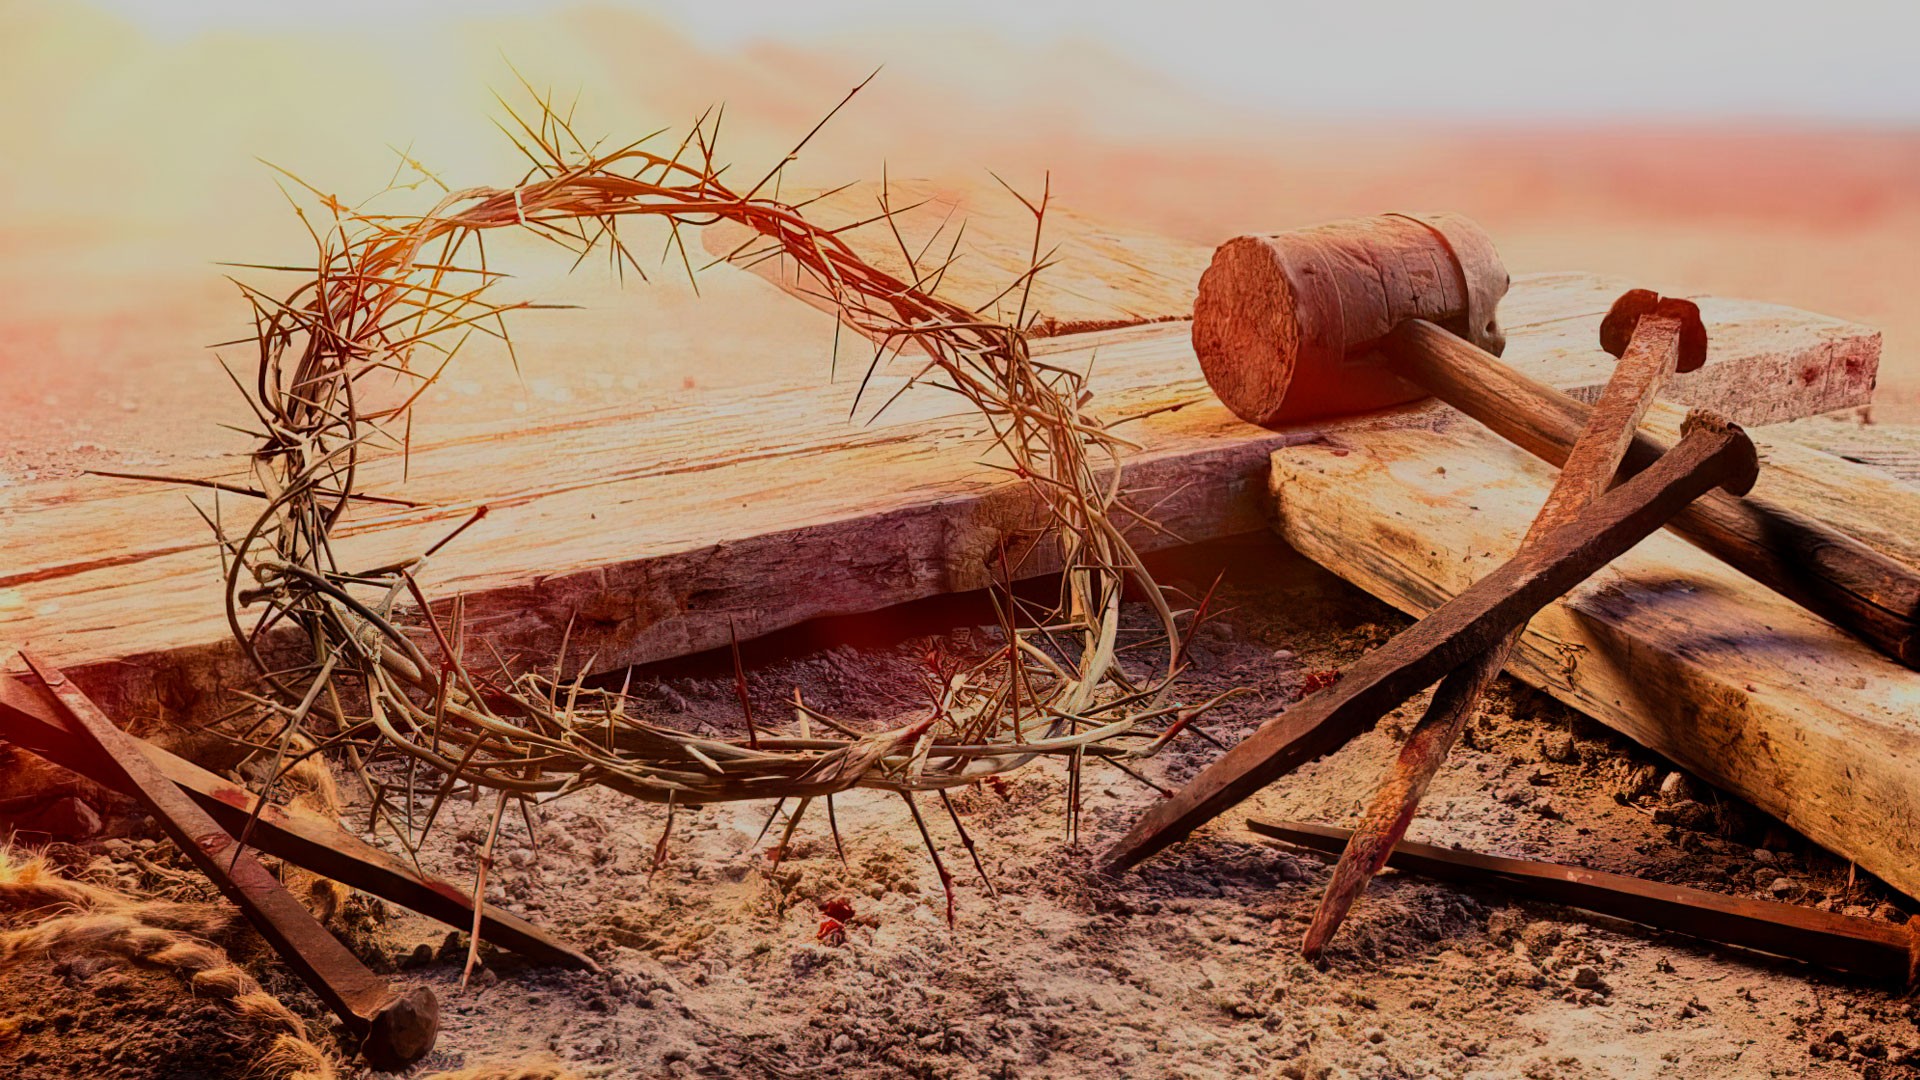 El Sacrificio de Cristo y su efecto transformador en nuestra vida diaria